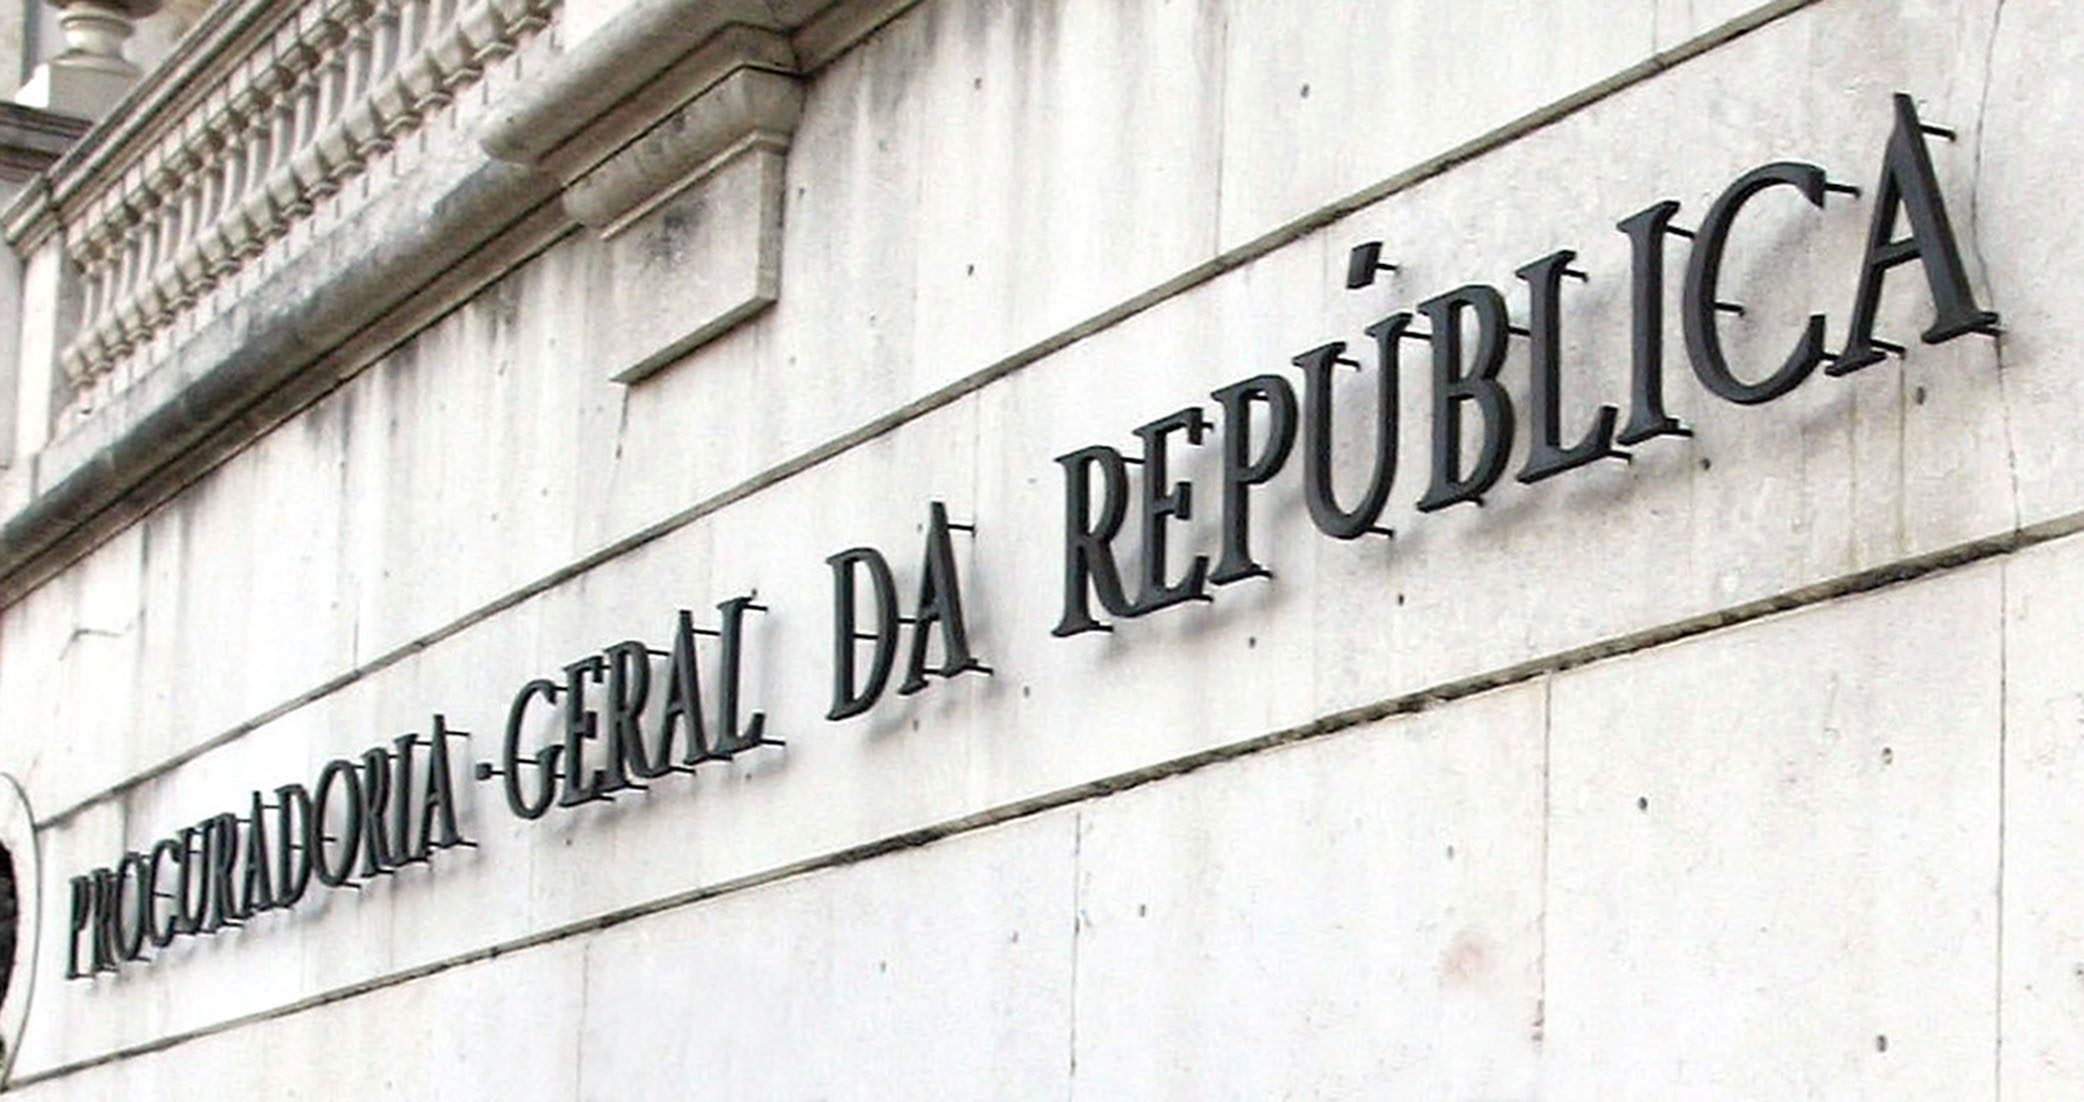 Ministério Público pede nulidade de projeto conhecido como &#8220;mono do Rato&#8221; em Lisboa